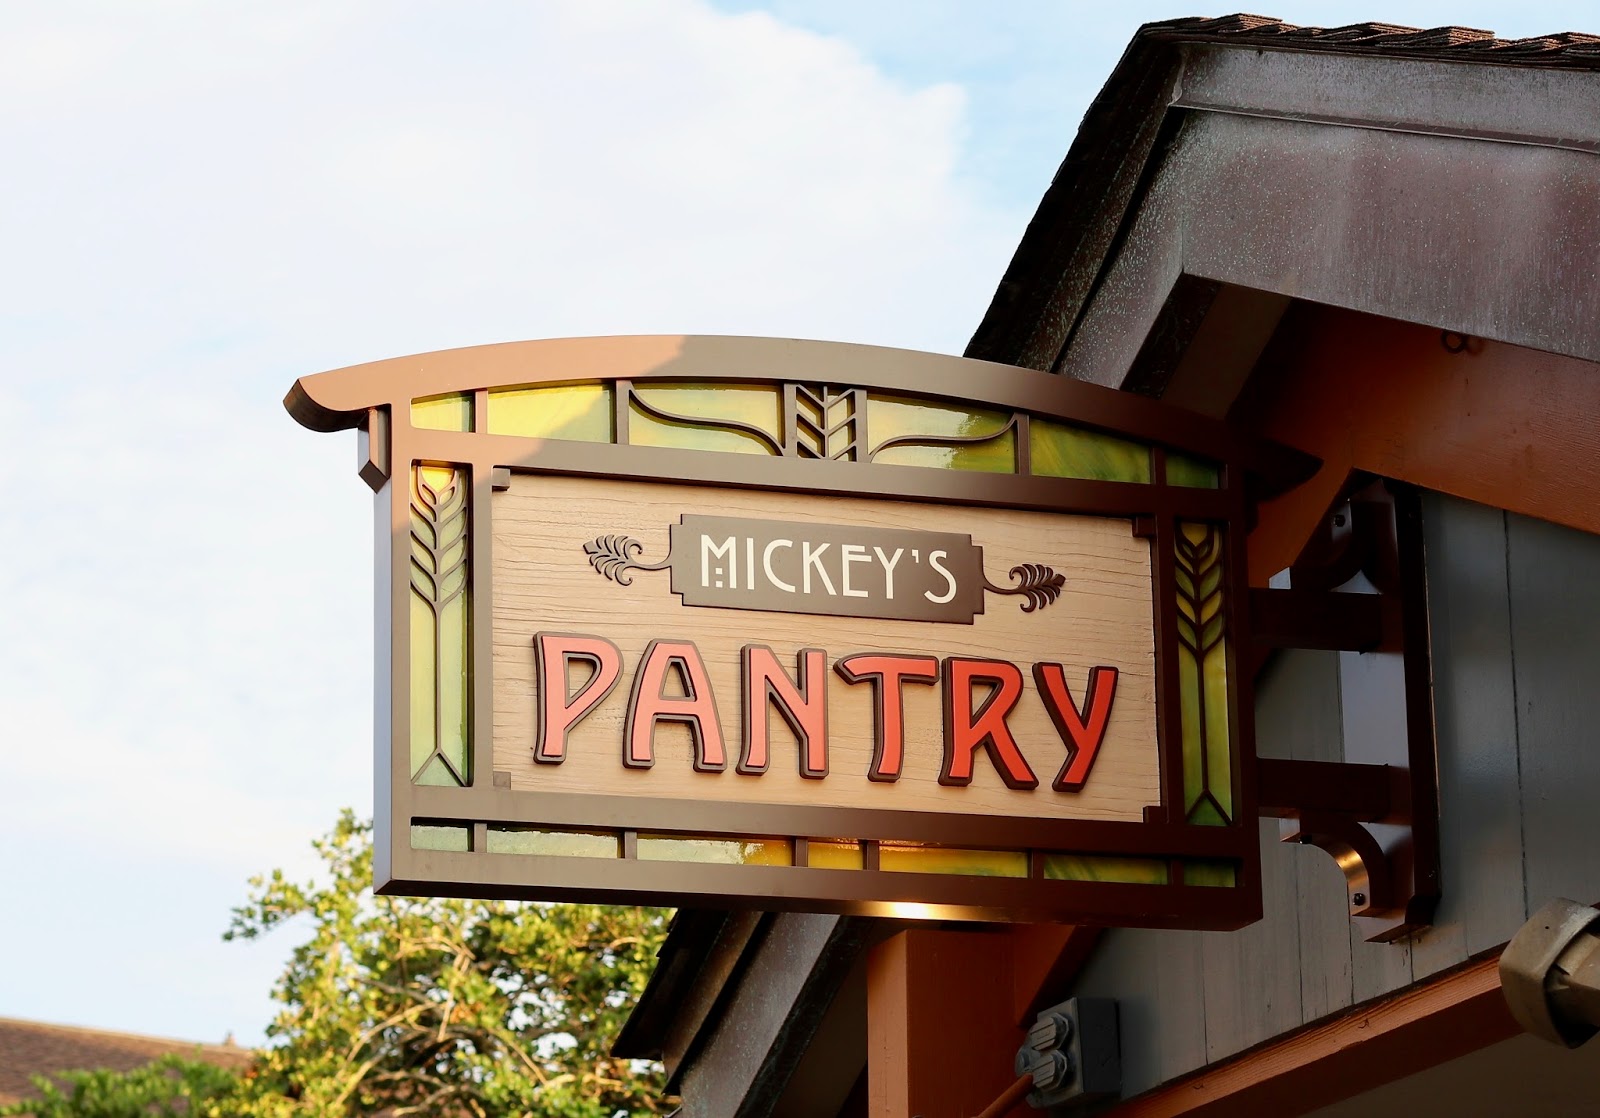 Disney-Springs-Micky's-Pantry-Orlando-Florida